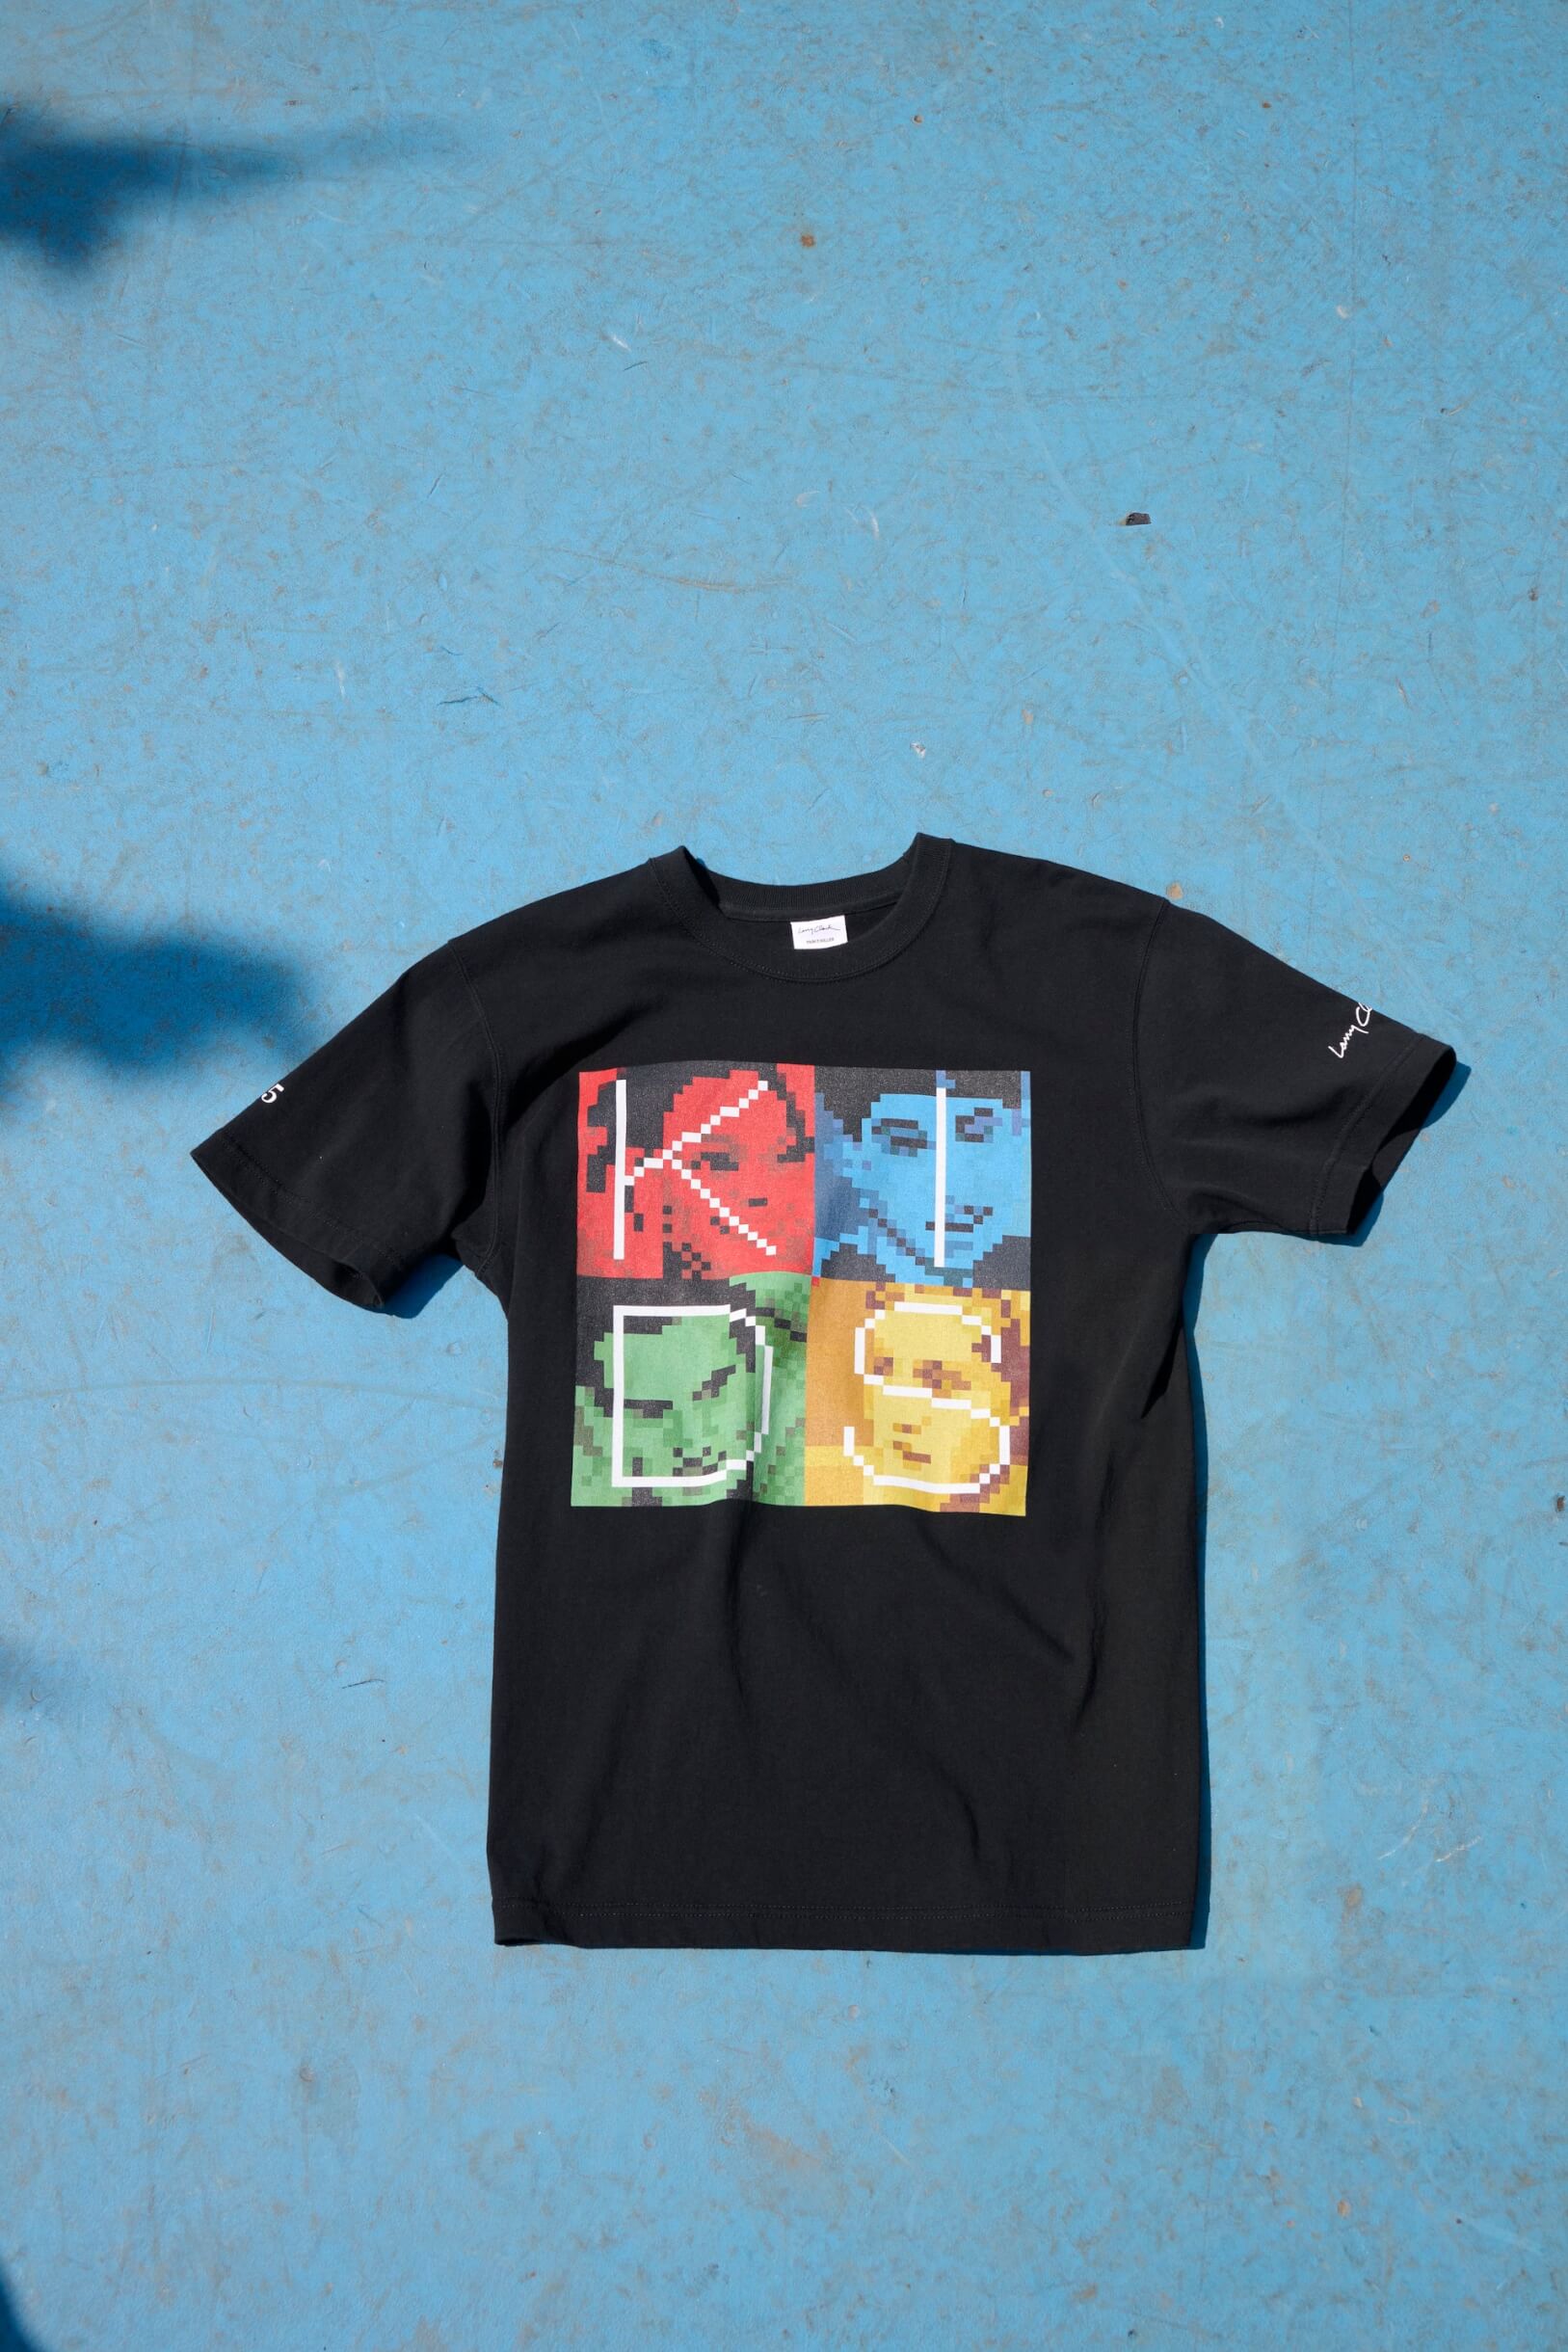 映画『Kids』ラリー・クラーク × R.TM GALLERYによる限定Tシャツが販売 